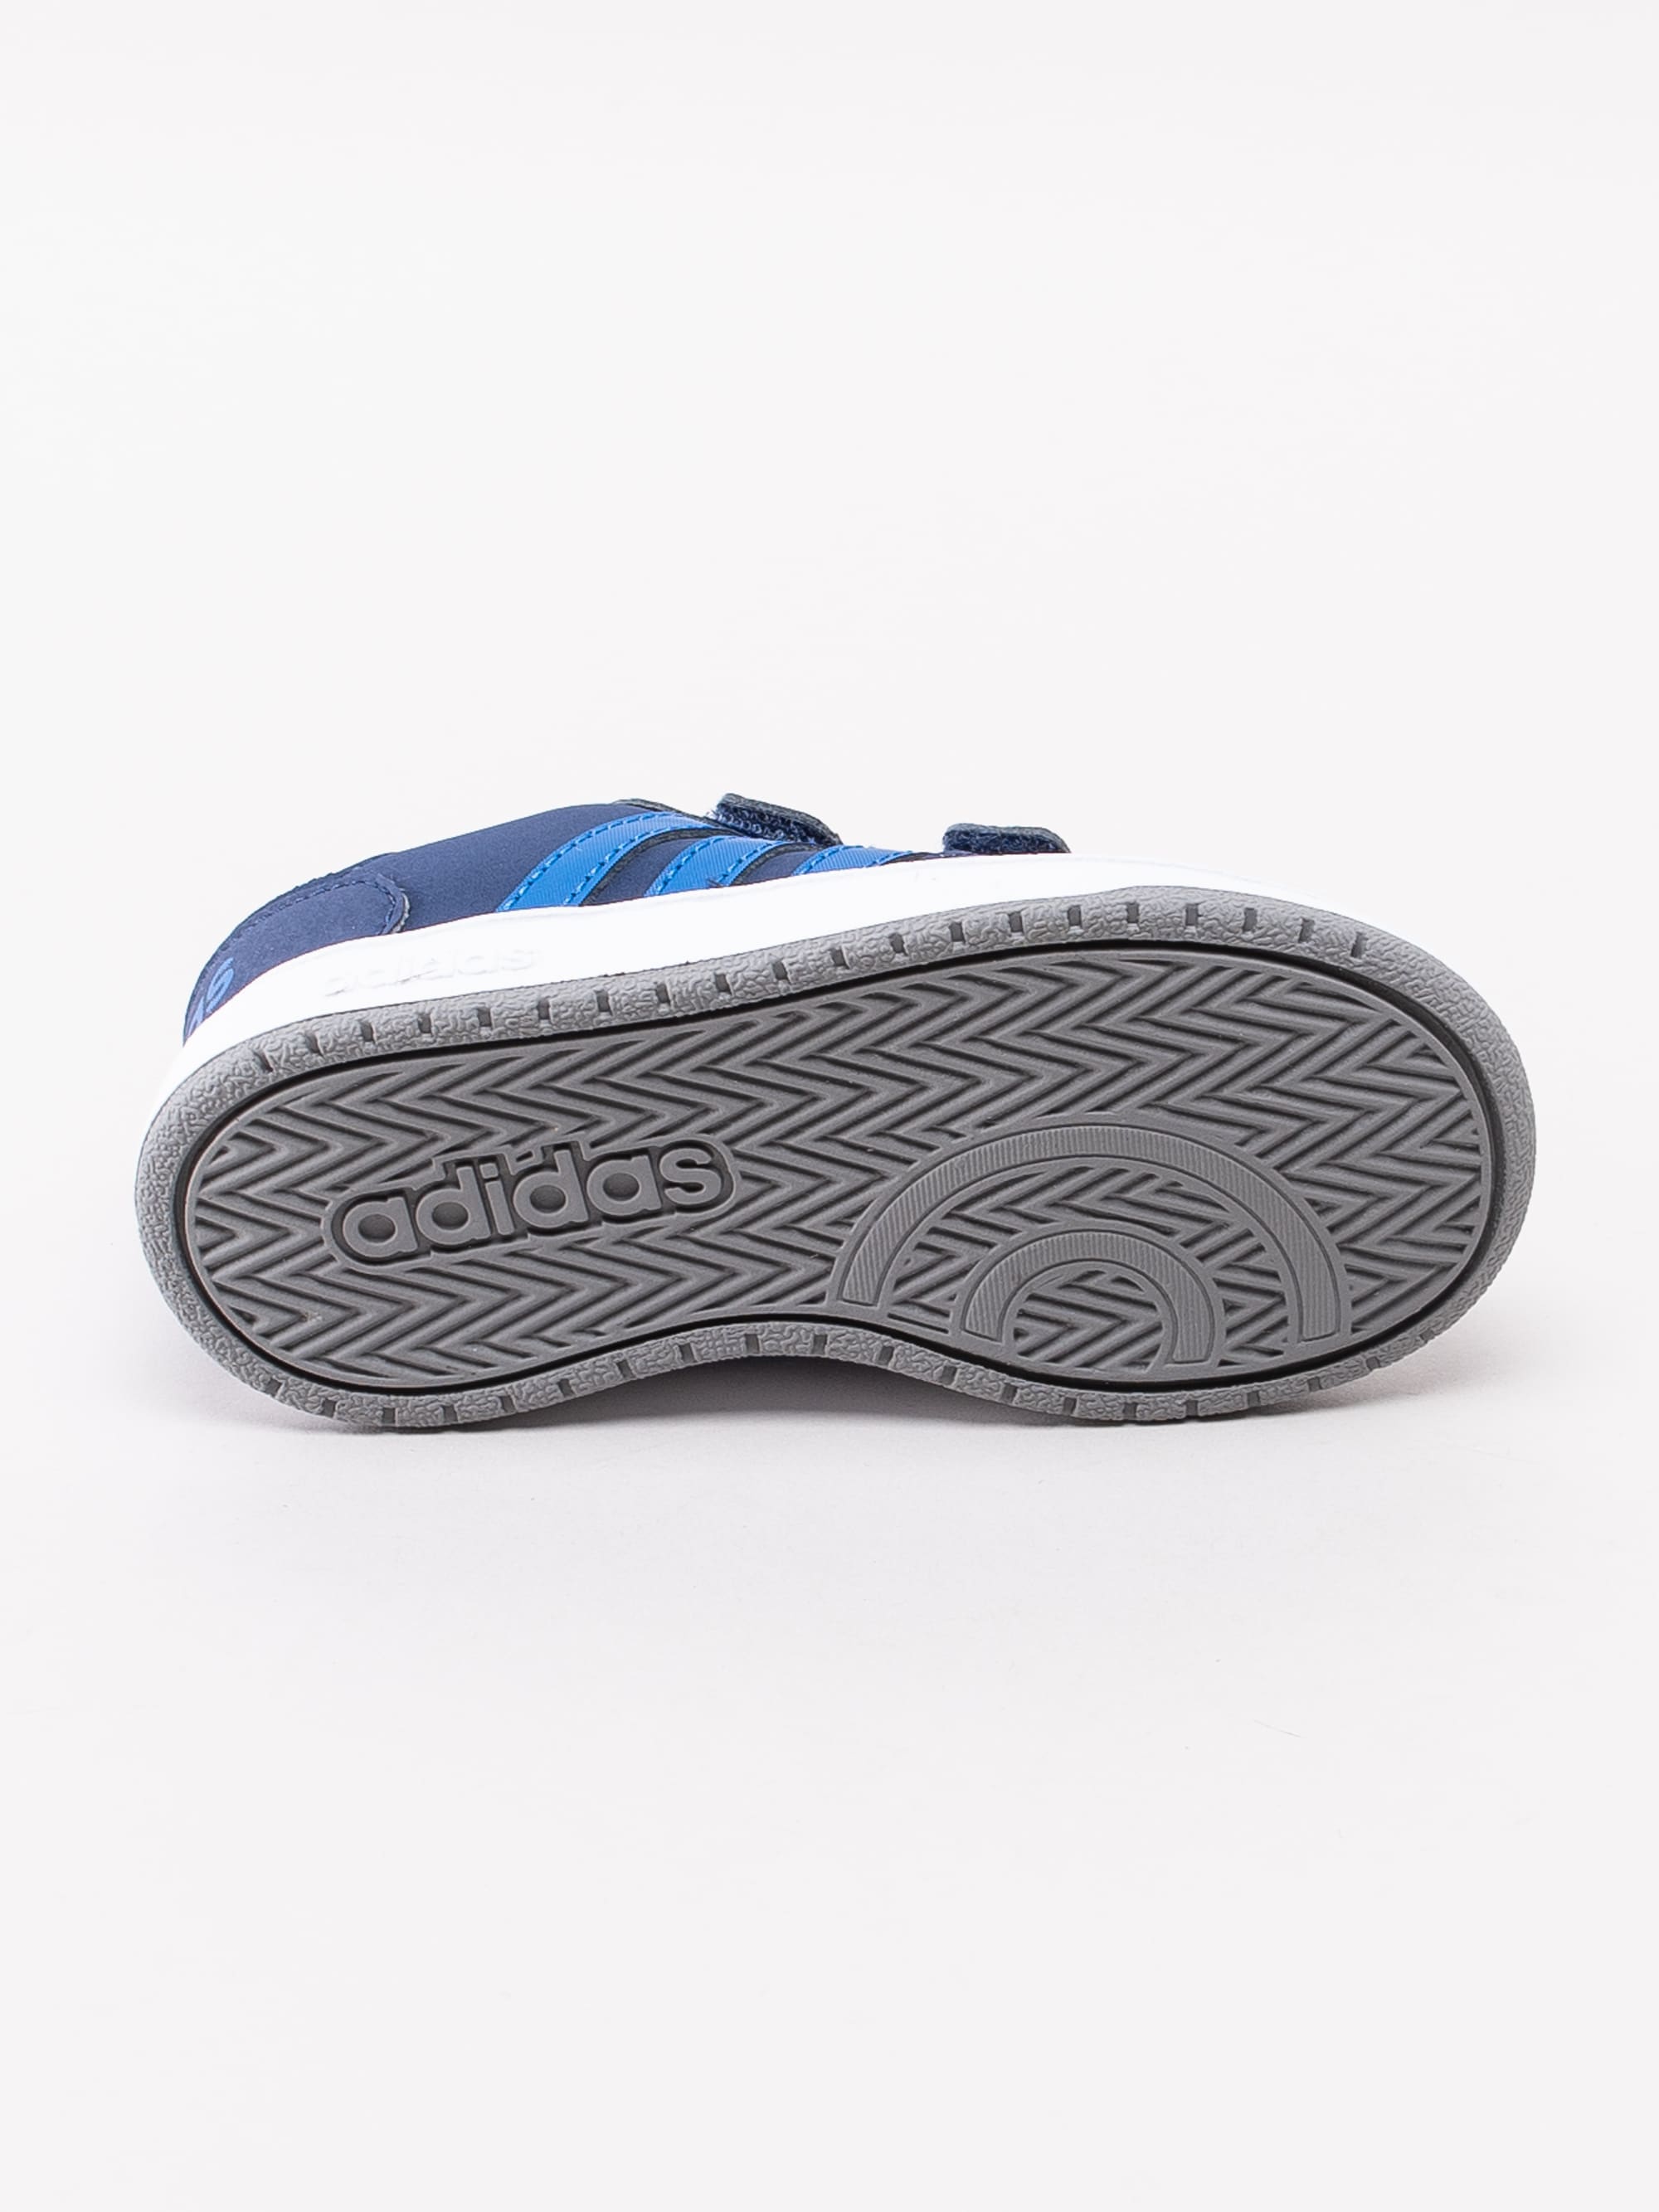 56193009 Adidas Hoops 2.0 Cmf I EE9001 mörkblå sneakers för små barn med kardborre-5